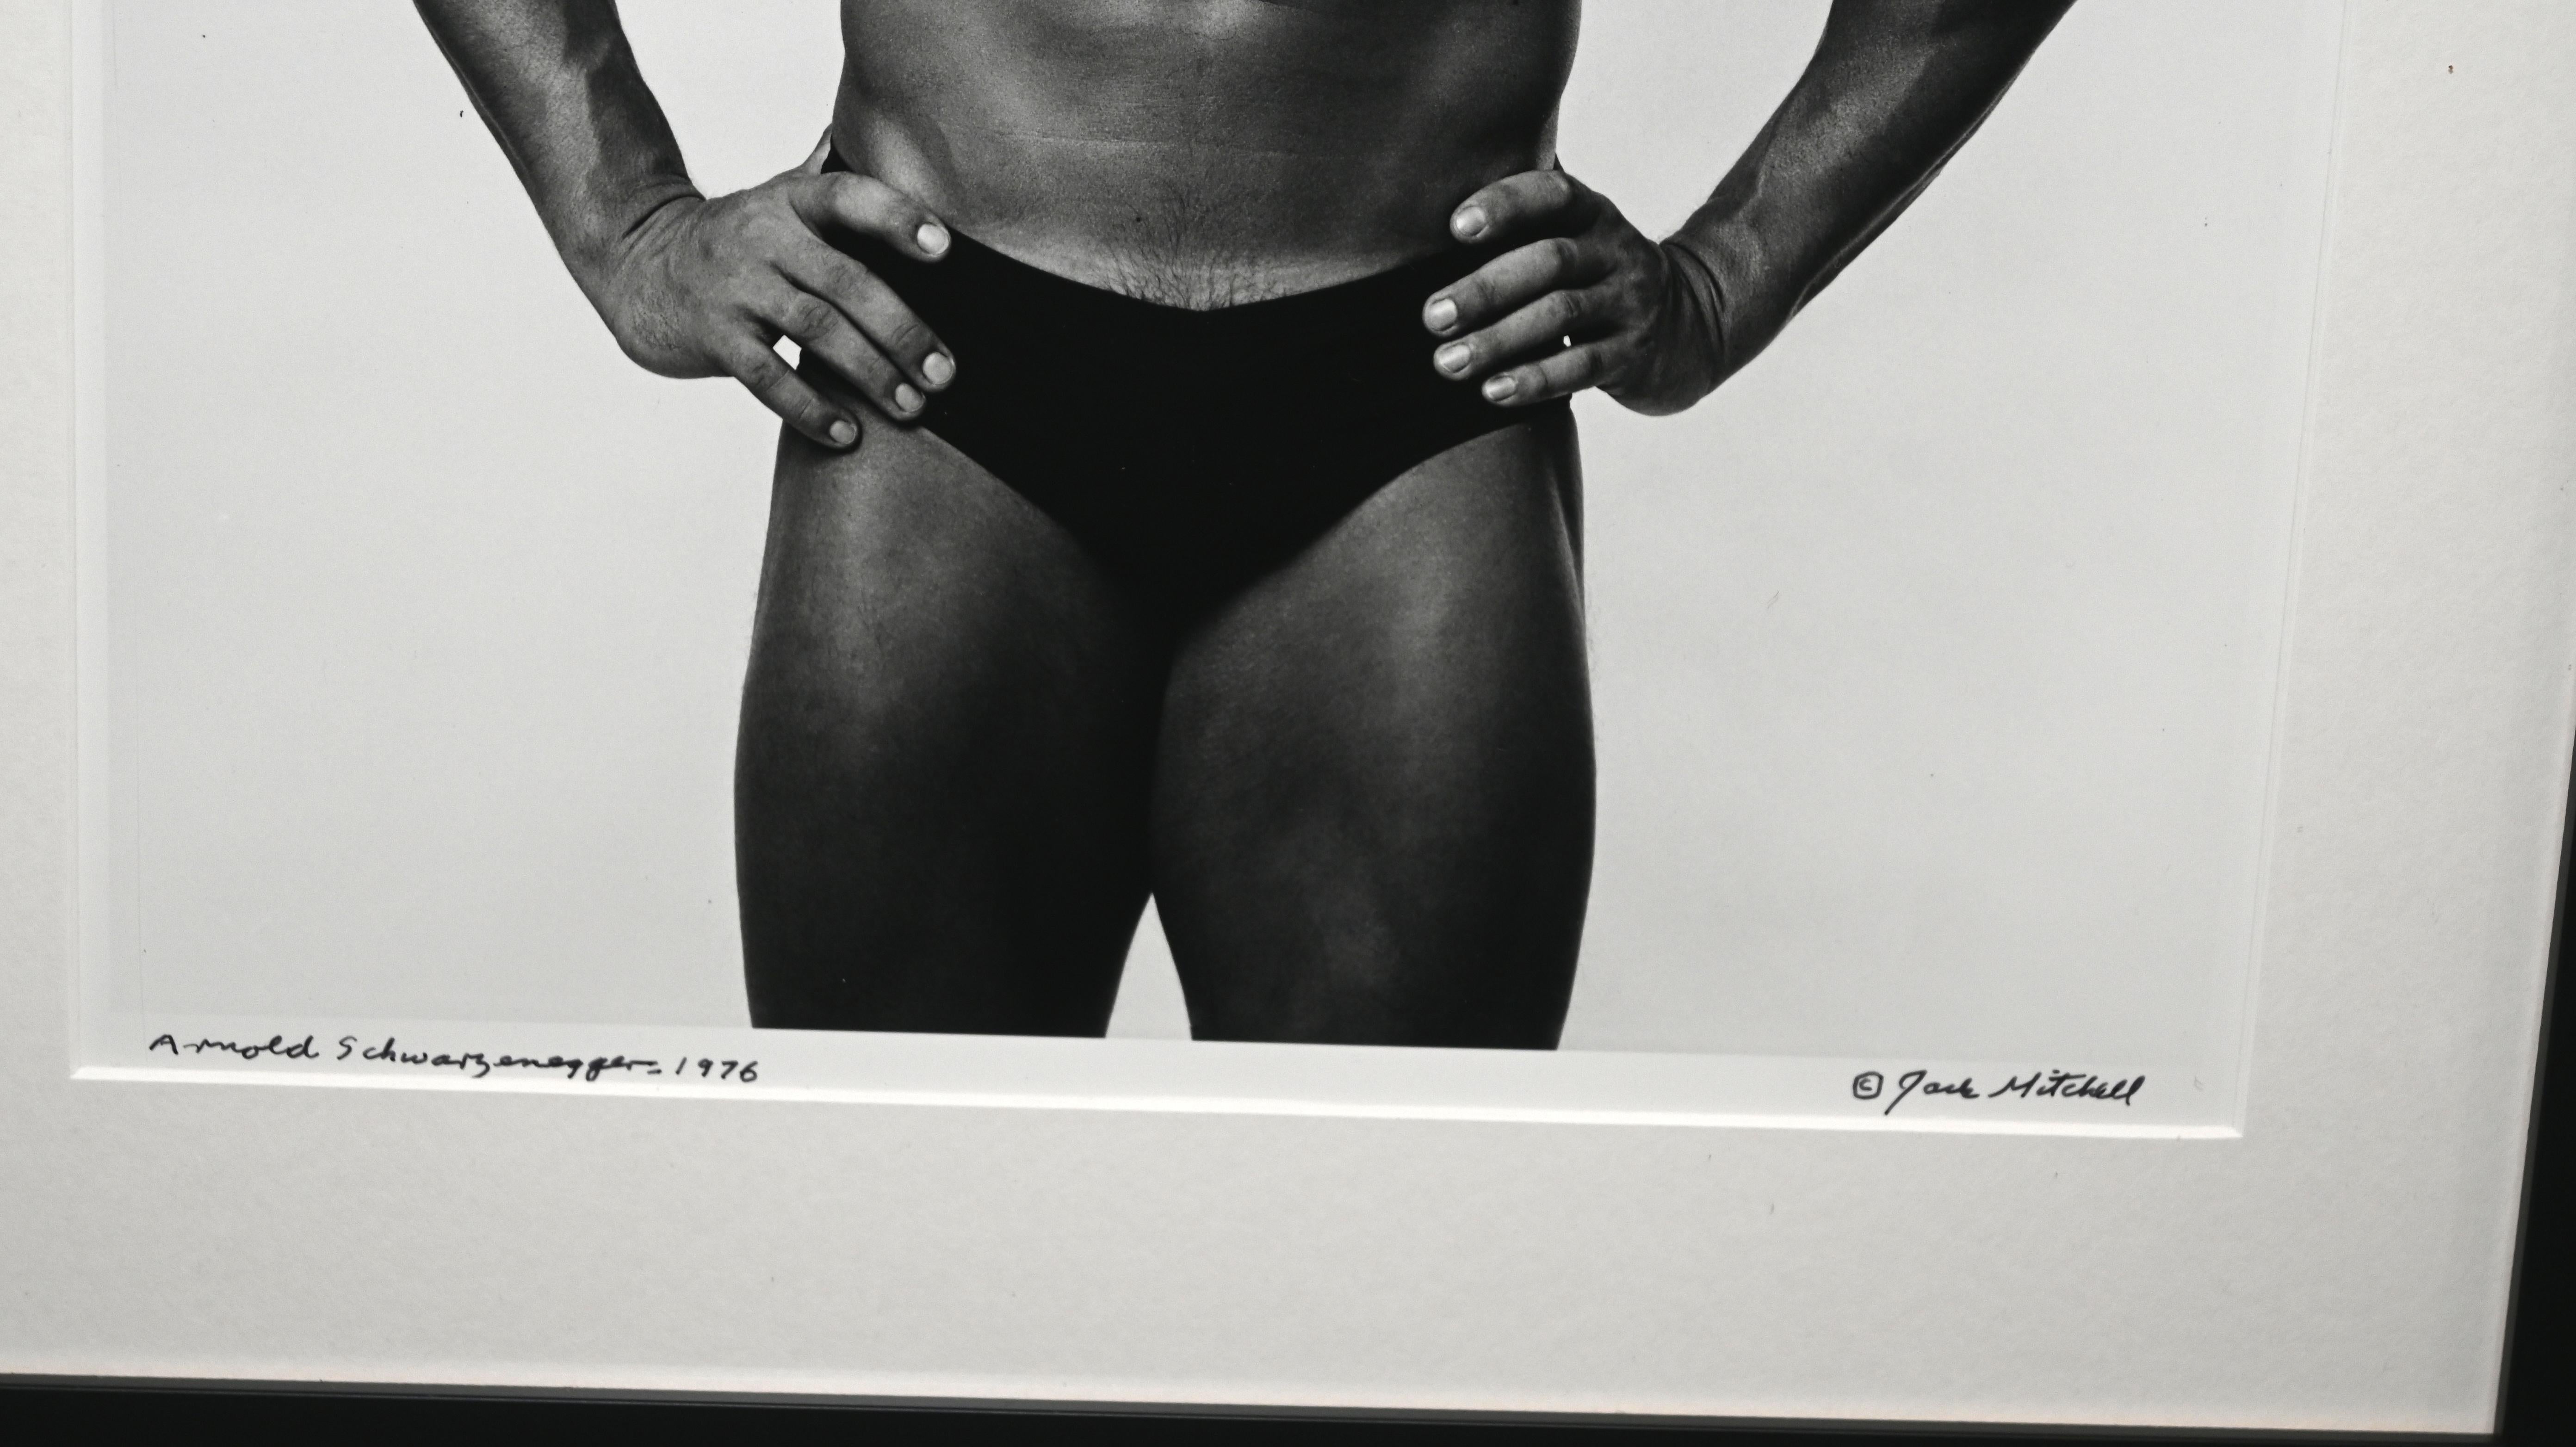 Arnold Schwarzenegger - Portrait encadré, photo signée vintage - Pop Art Photograph par Jack Mitchell